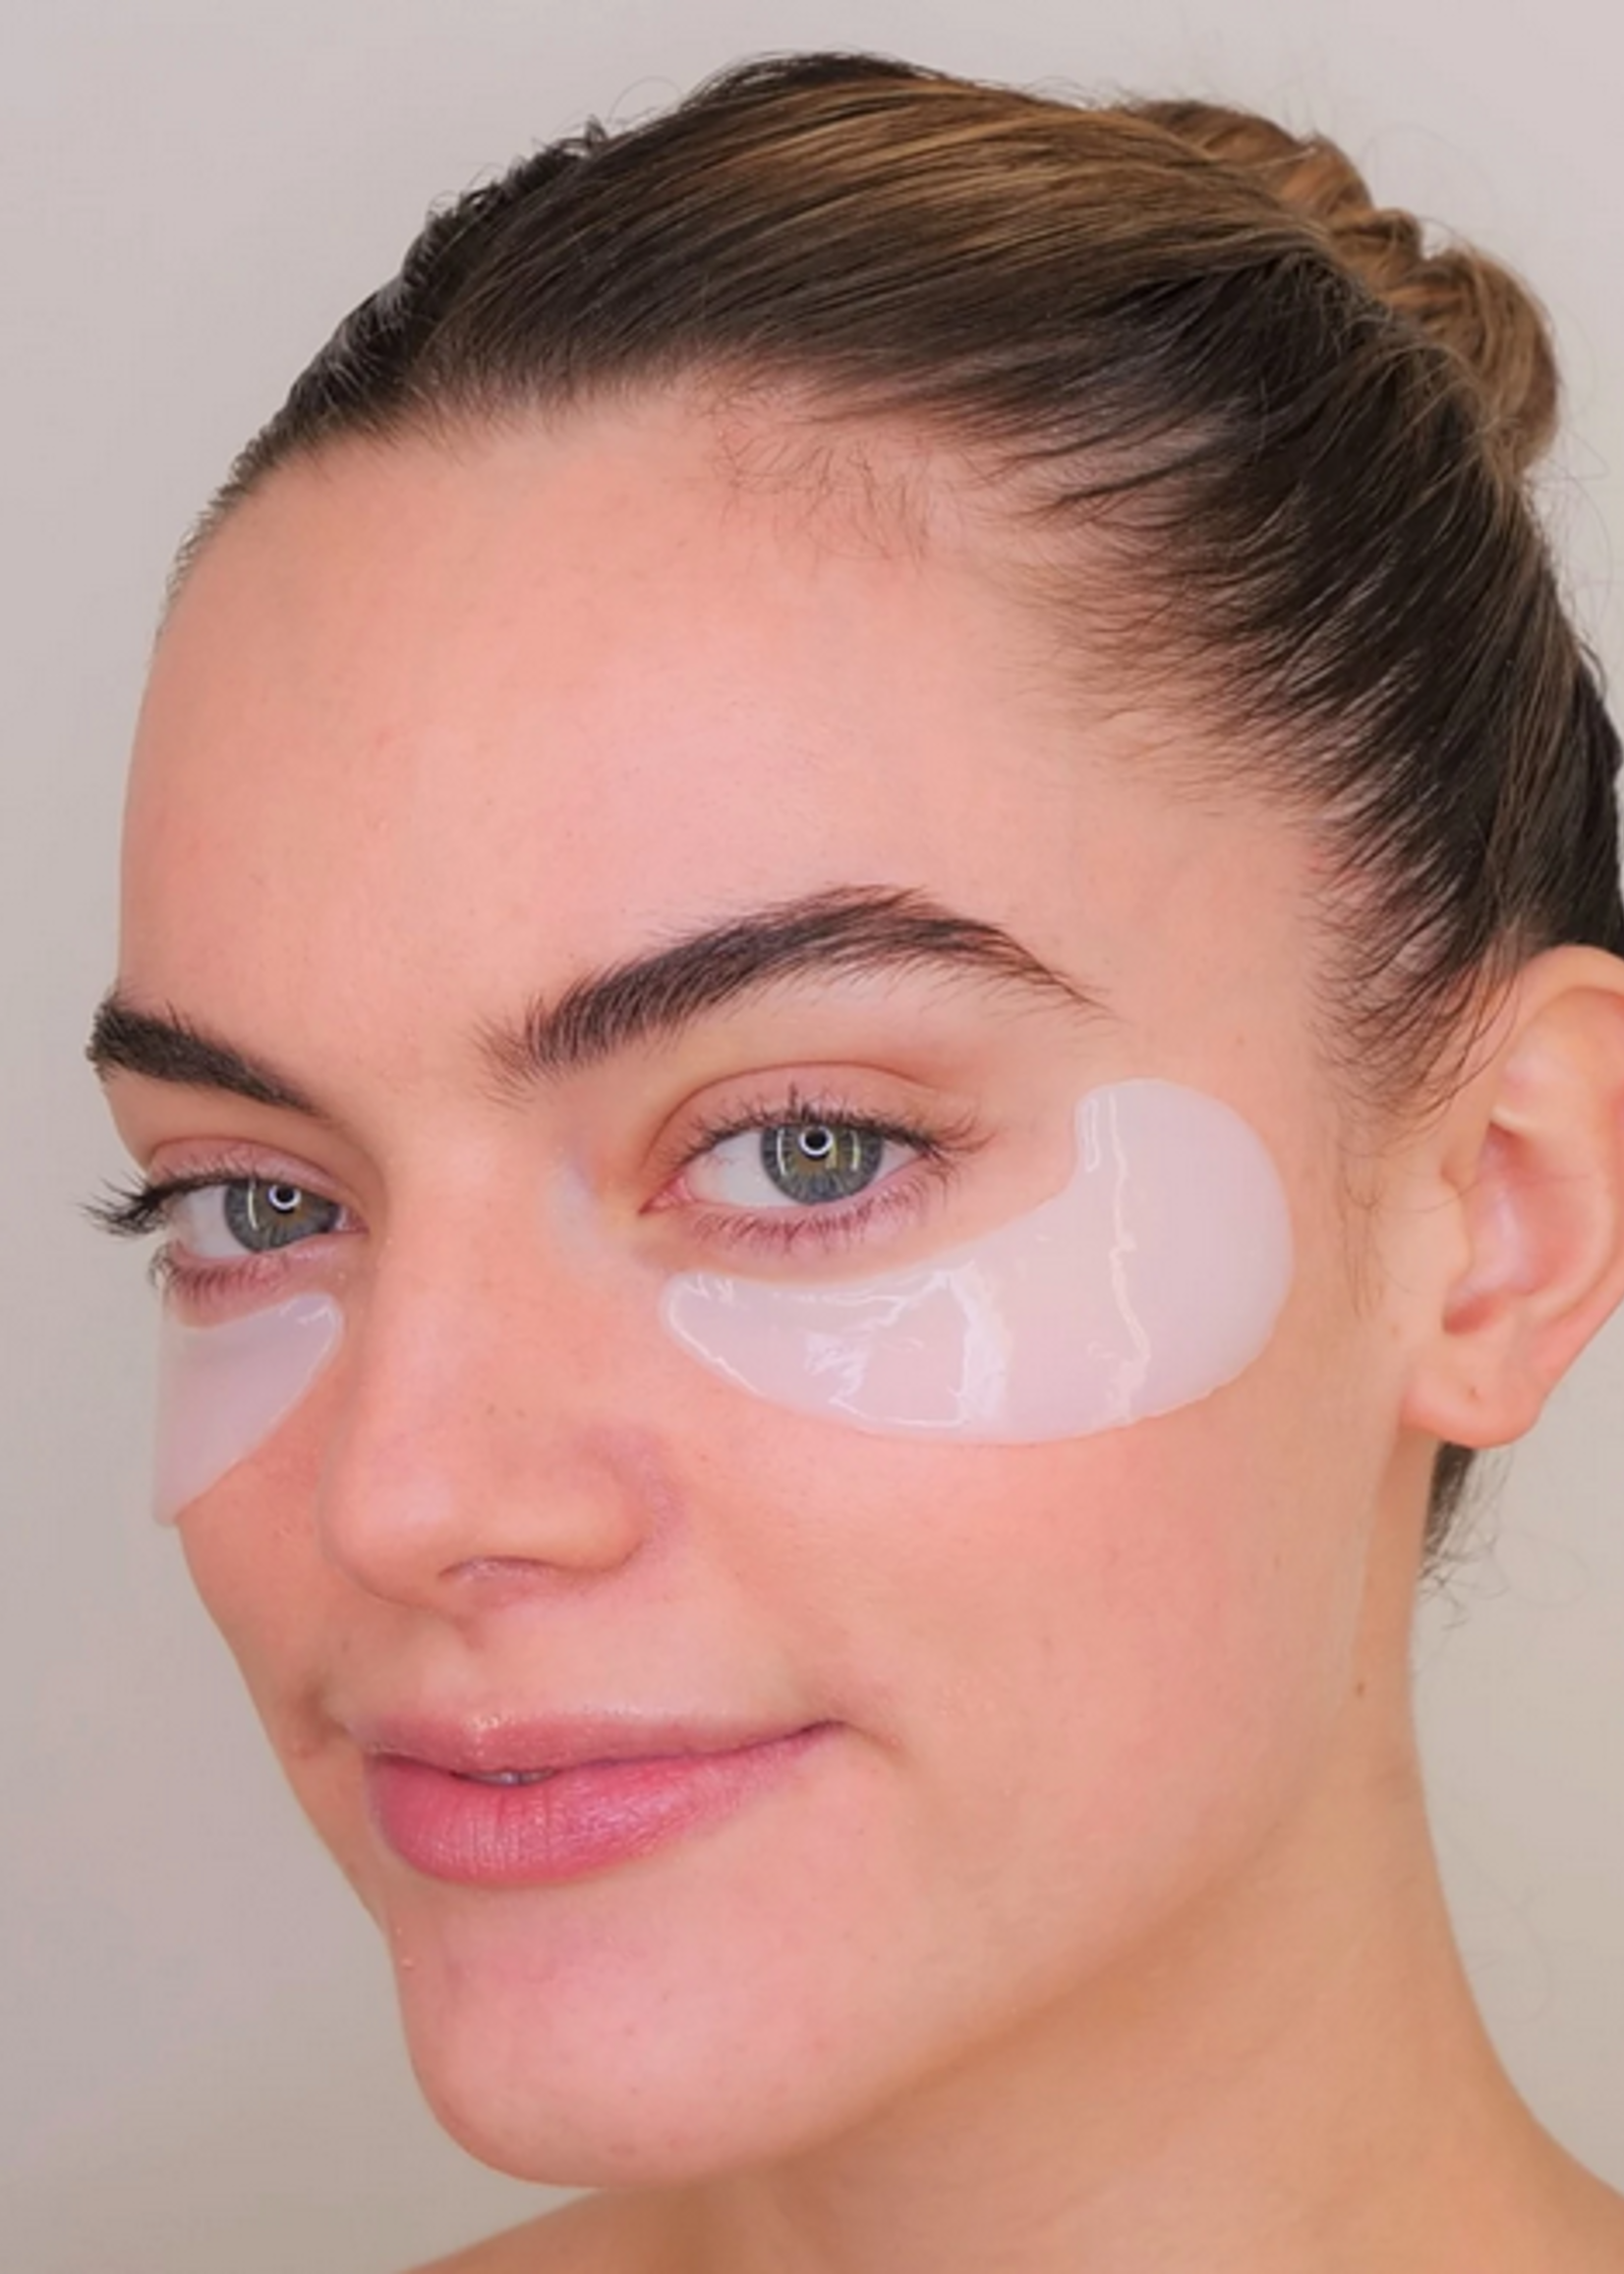 Velez Velez Intense Hydration Eye Mask 3-pack